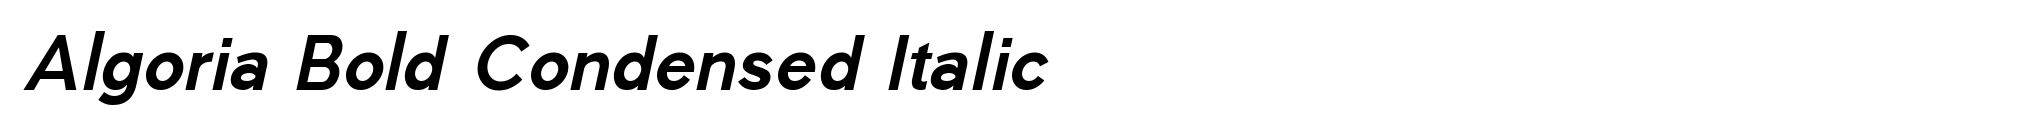 Algoria Bold Condensed Italic image